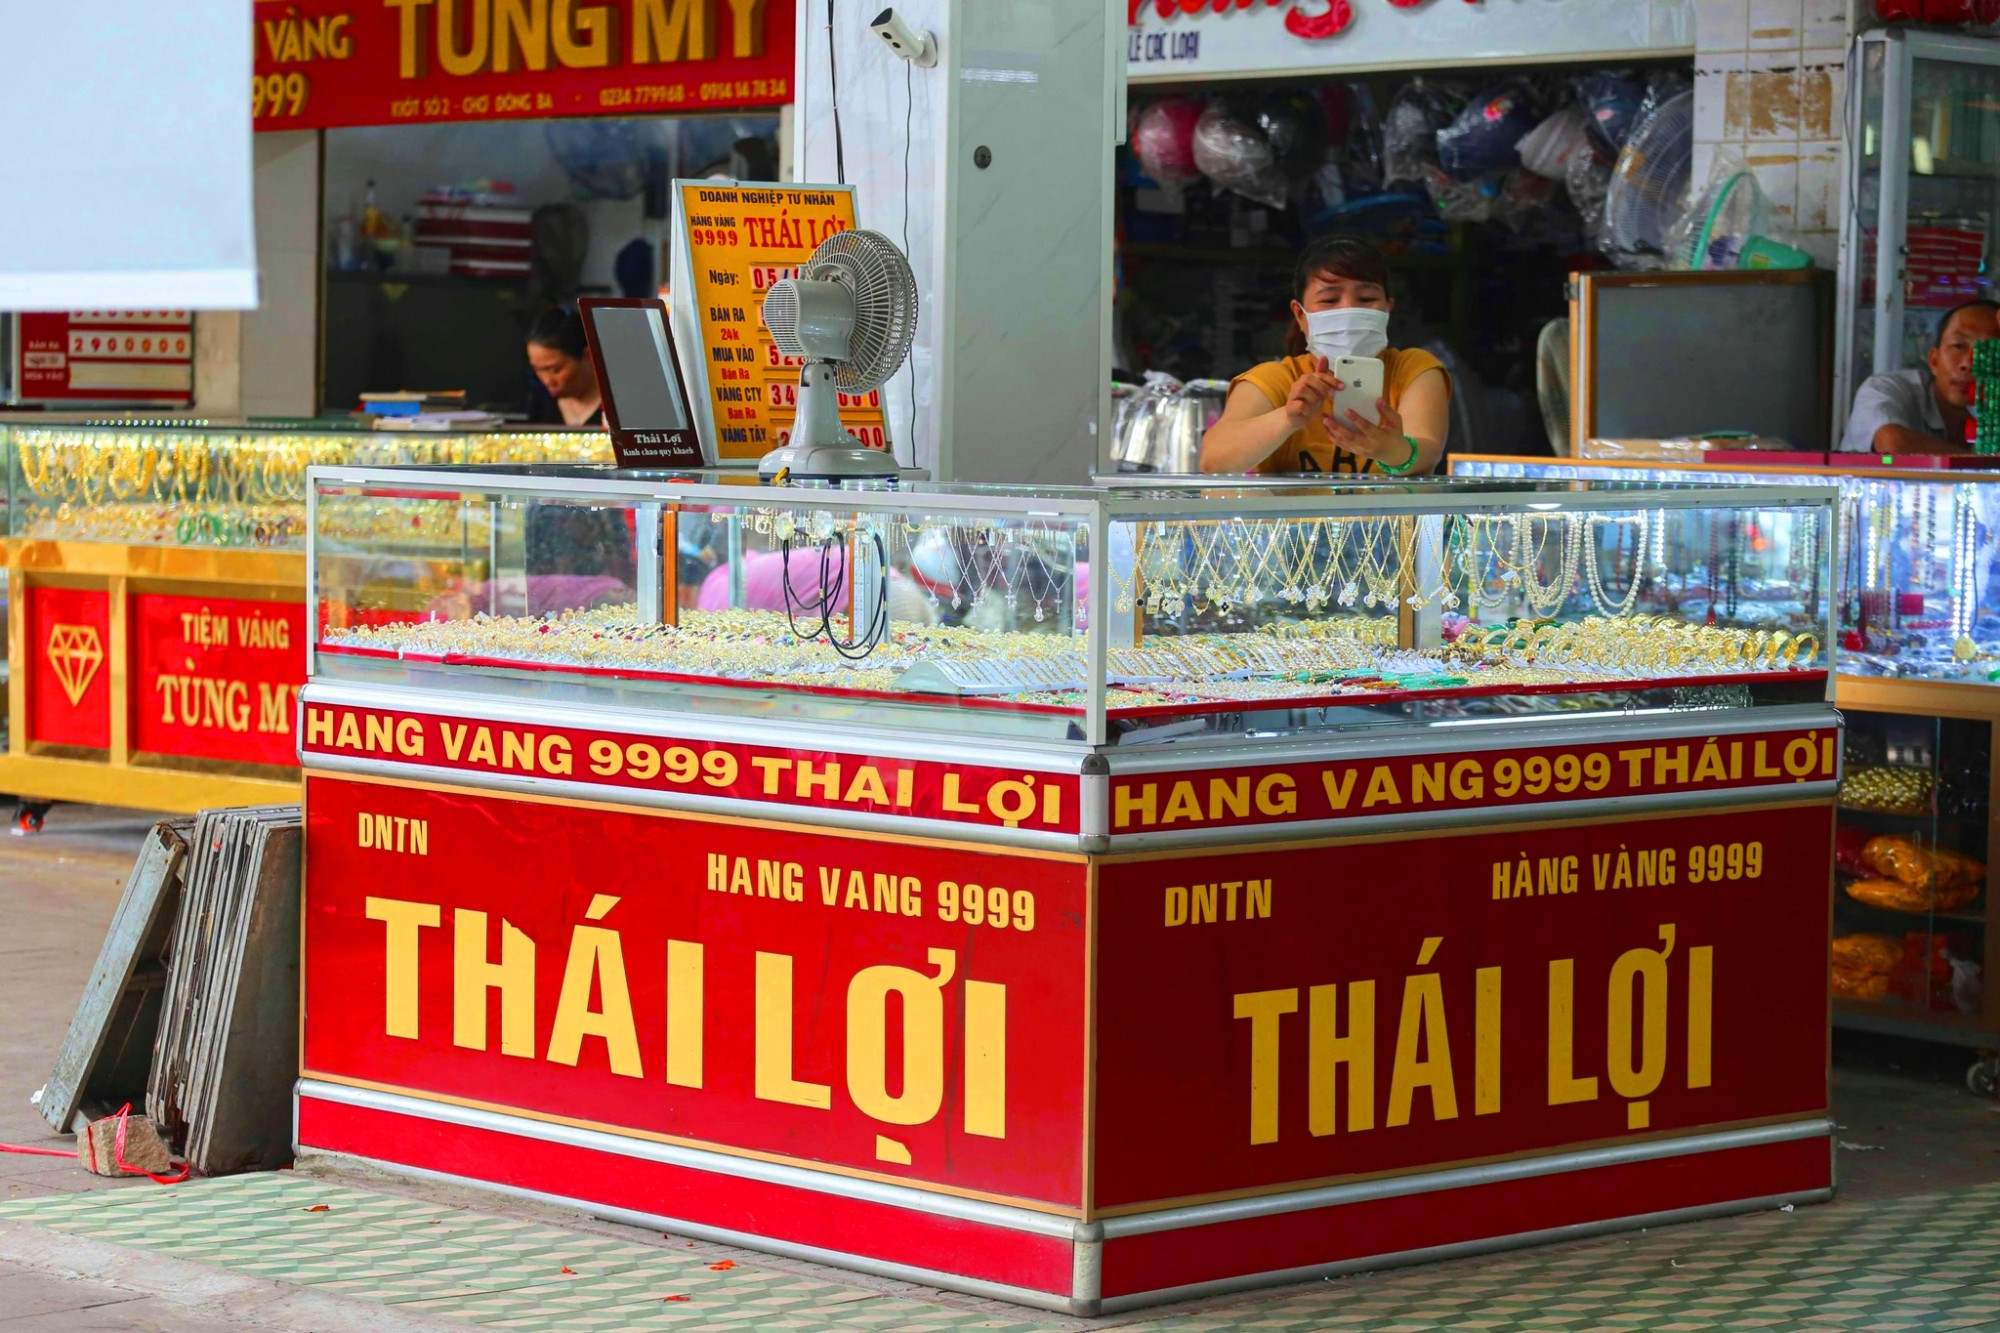 Hiện  tiệm vàng Thái Lợi đã buôn bán trở lại, tuy nhiên lượng vàng thất thoát qua thống kê vẫn chưa trả đủ